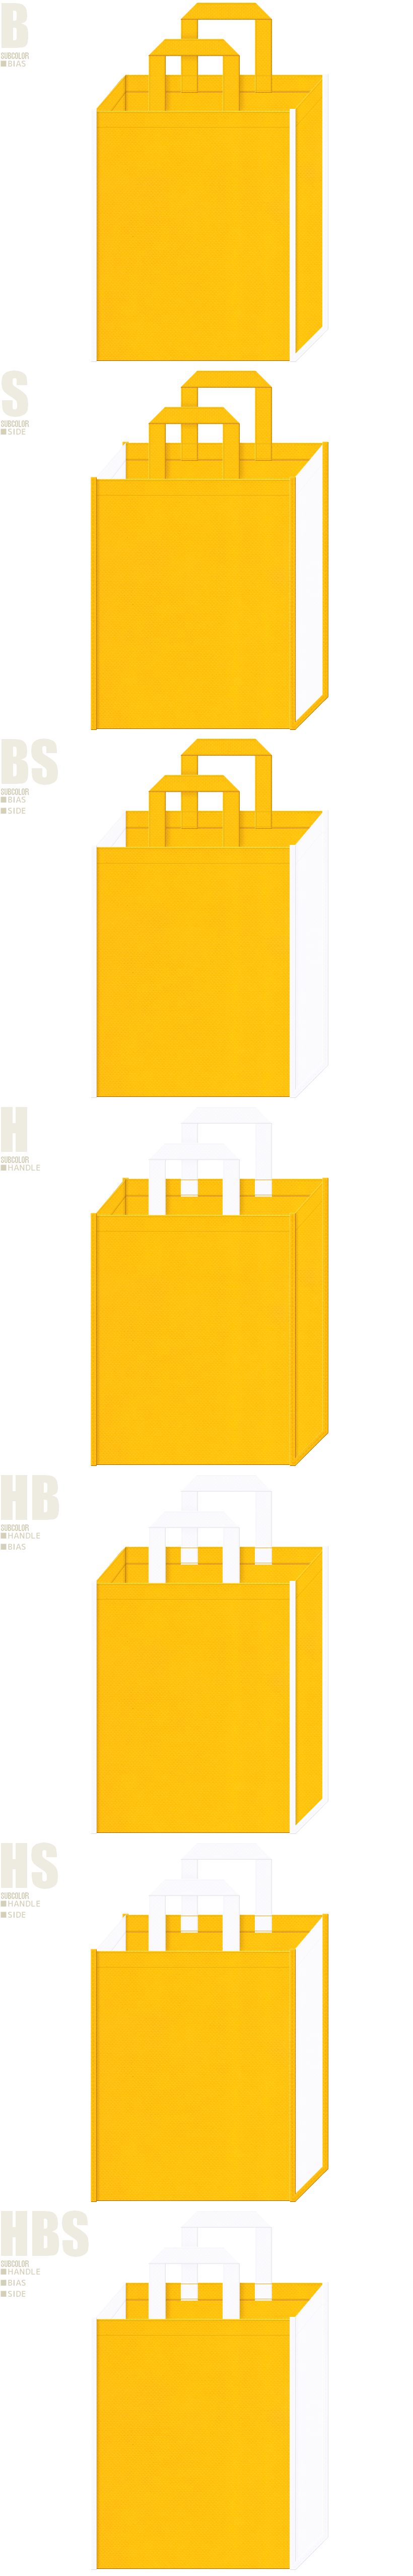 黄色の不織布バッグカラーシミュレーション7例